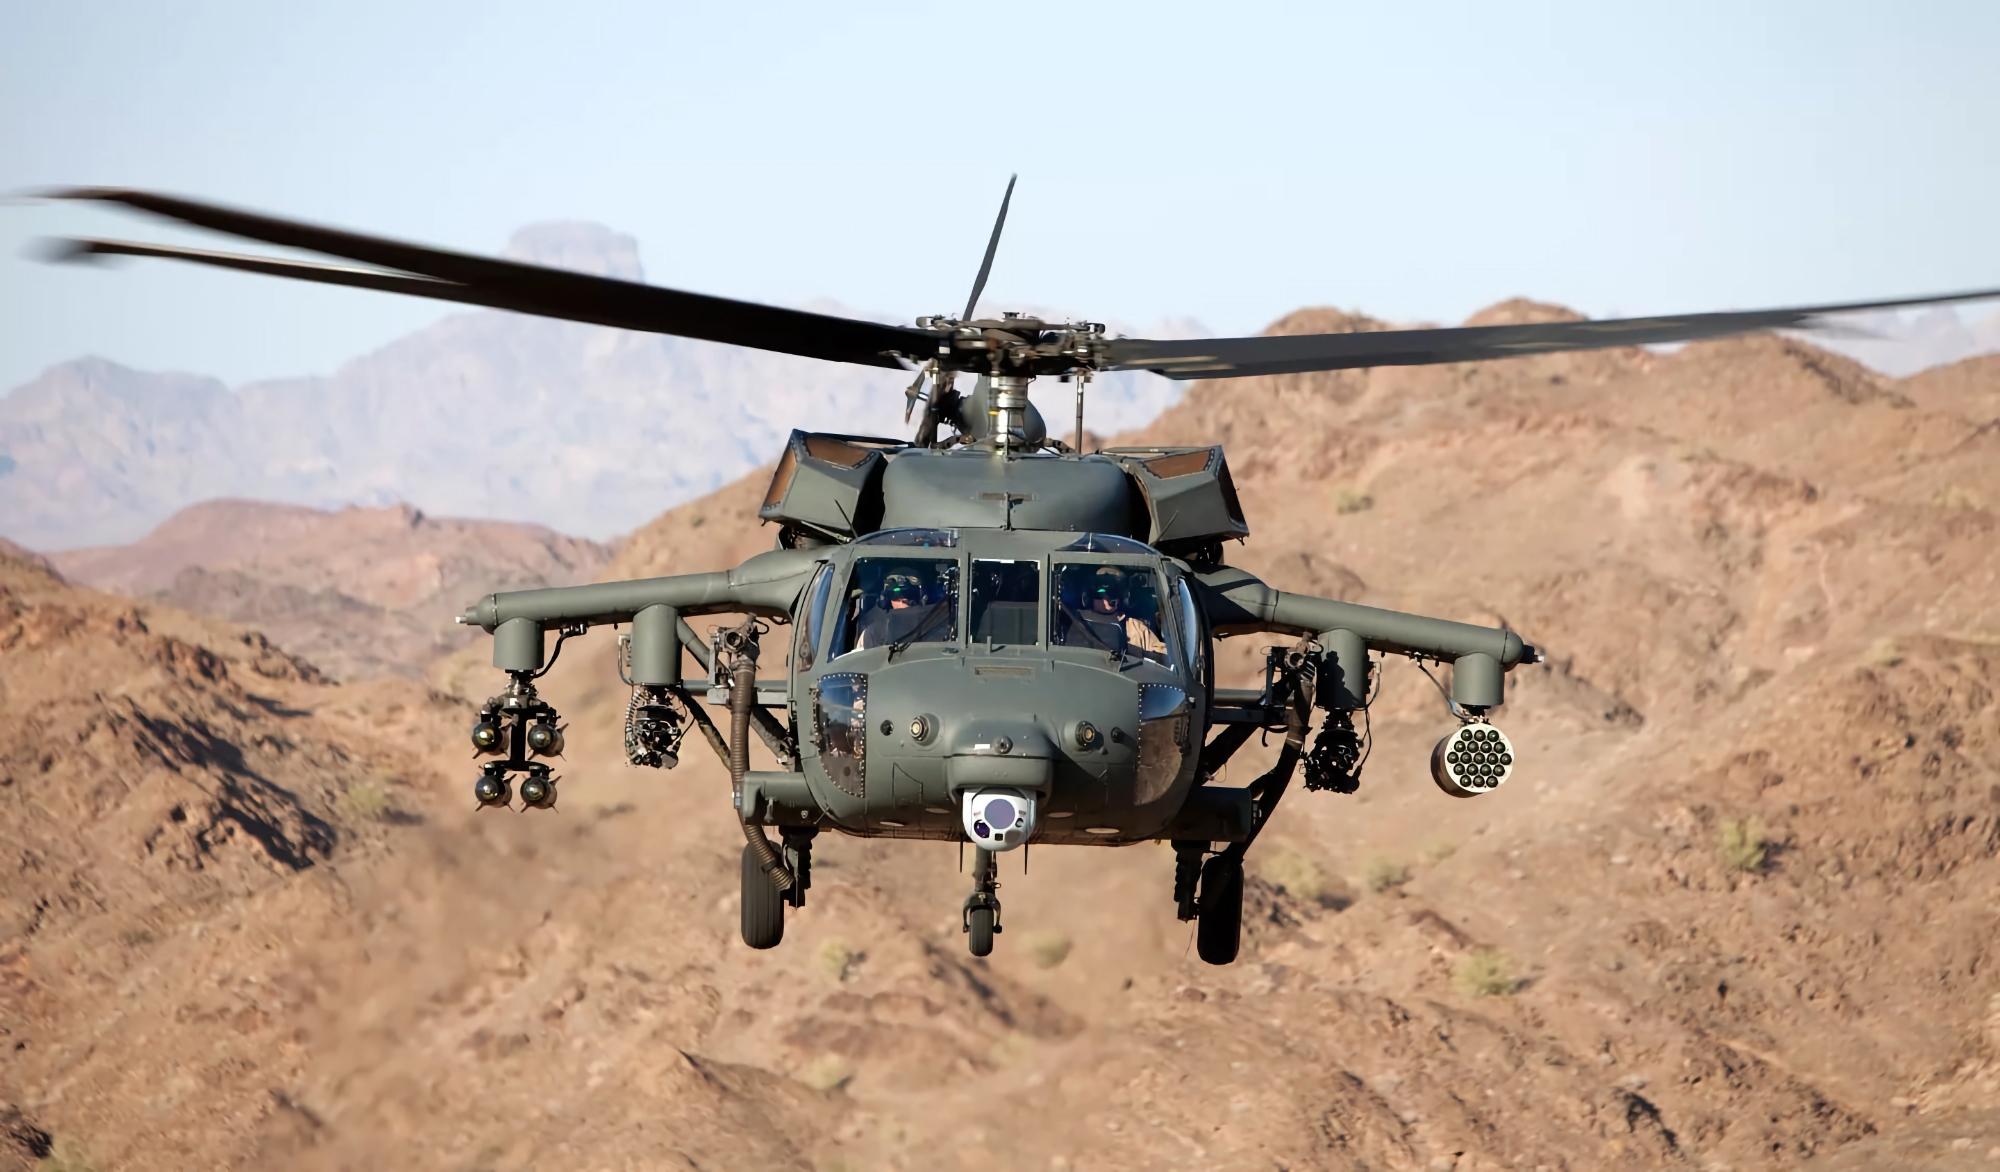 Contratto da 500.000.000 di dollari: gli Stati Uniti approvano la vendita di 8 elicotteri UH-60M Black Hawk alla Croazia